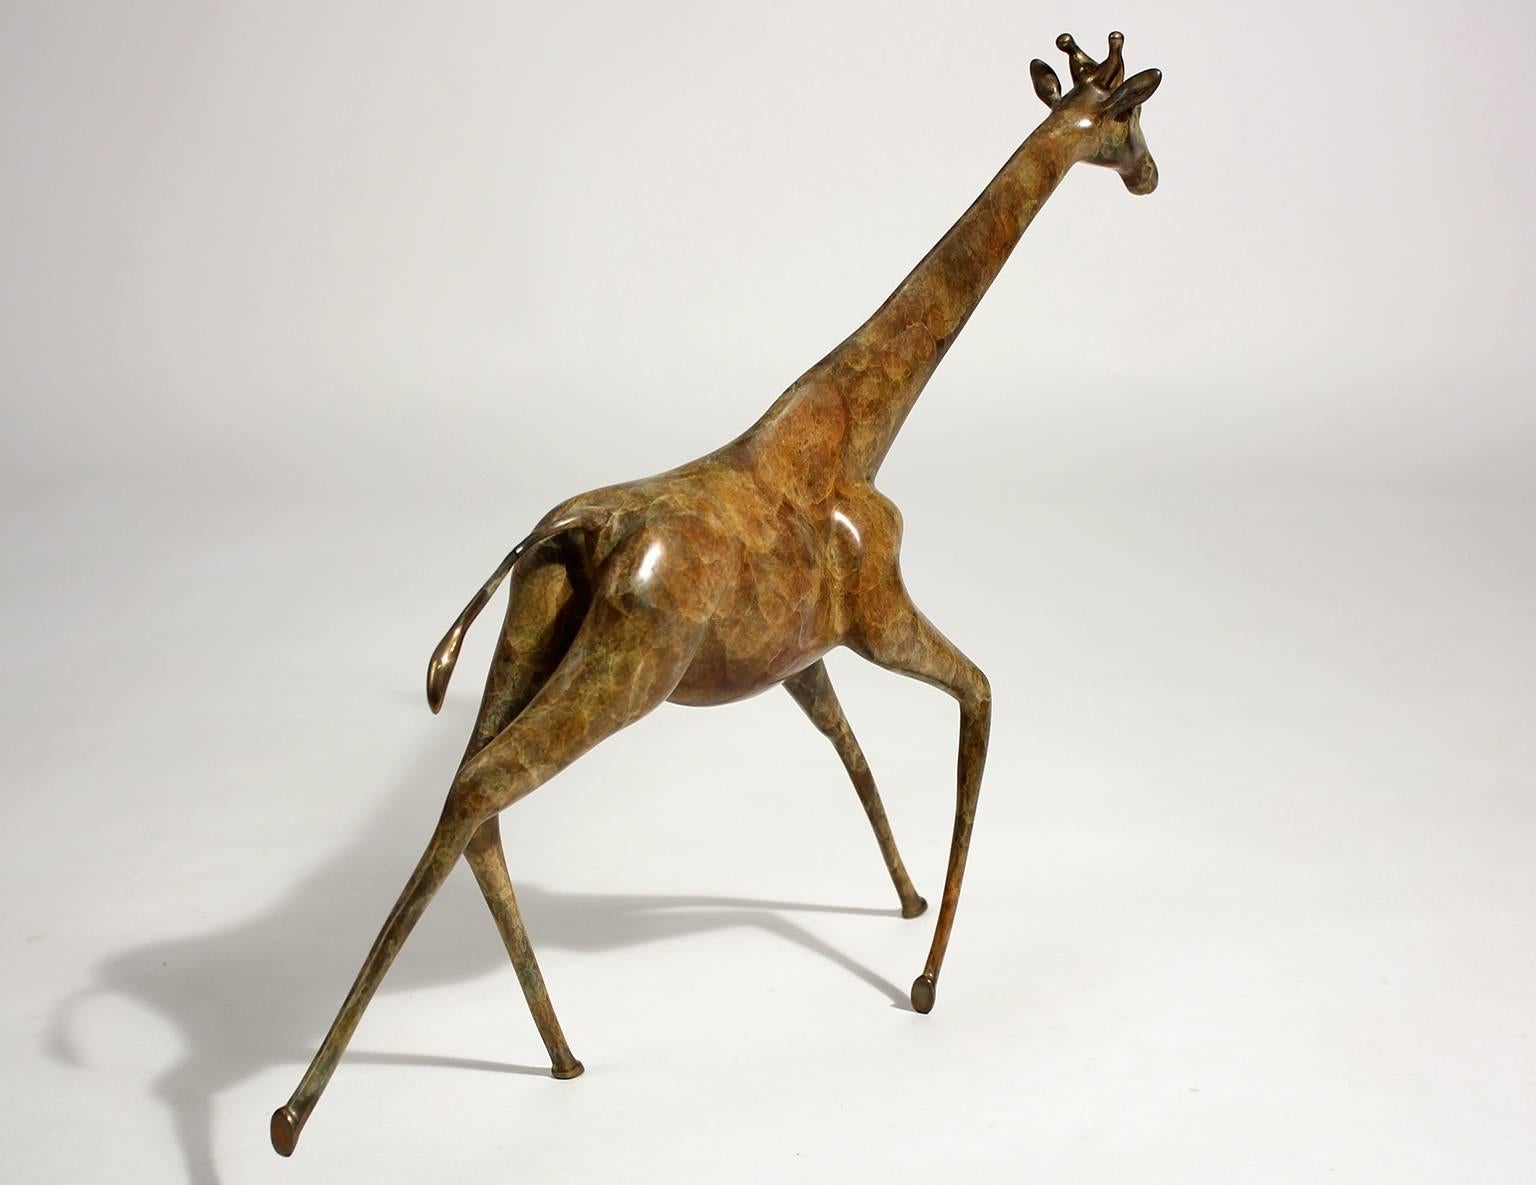 giraffe sculptures for sale